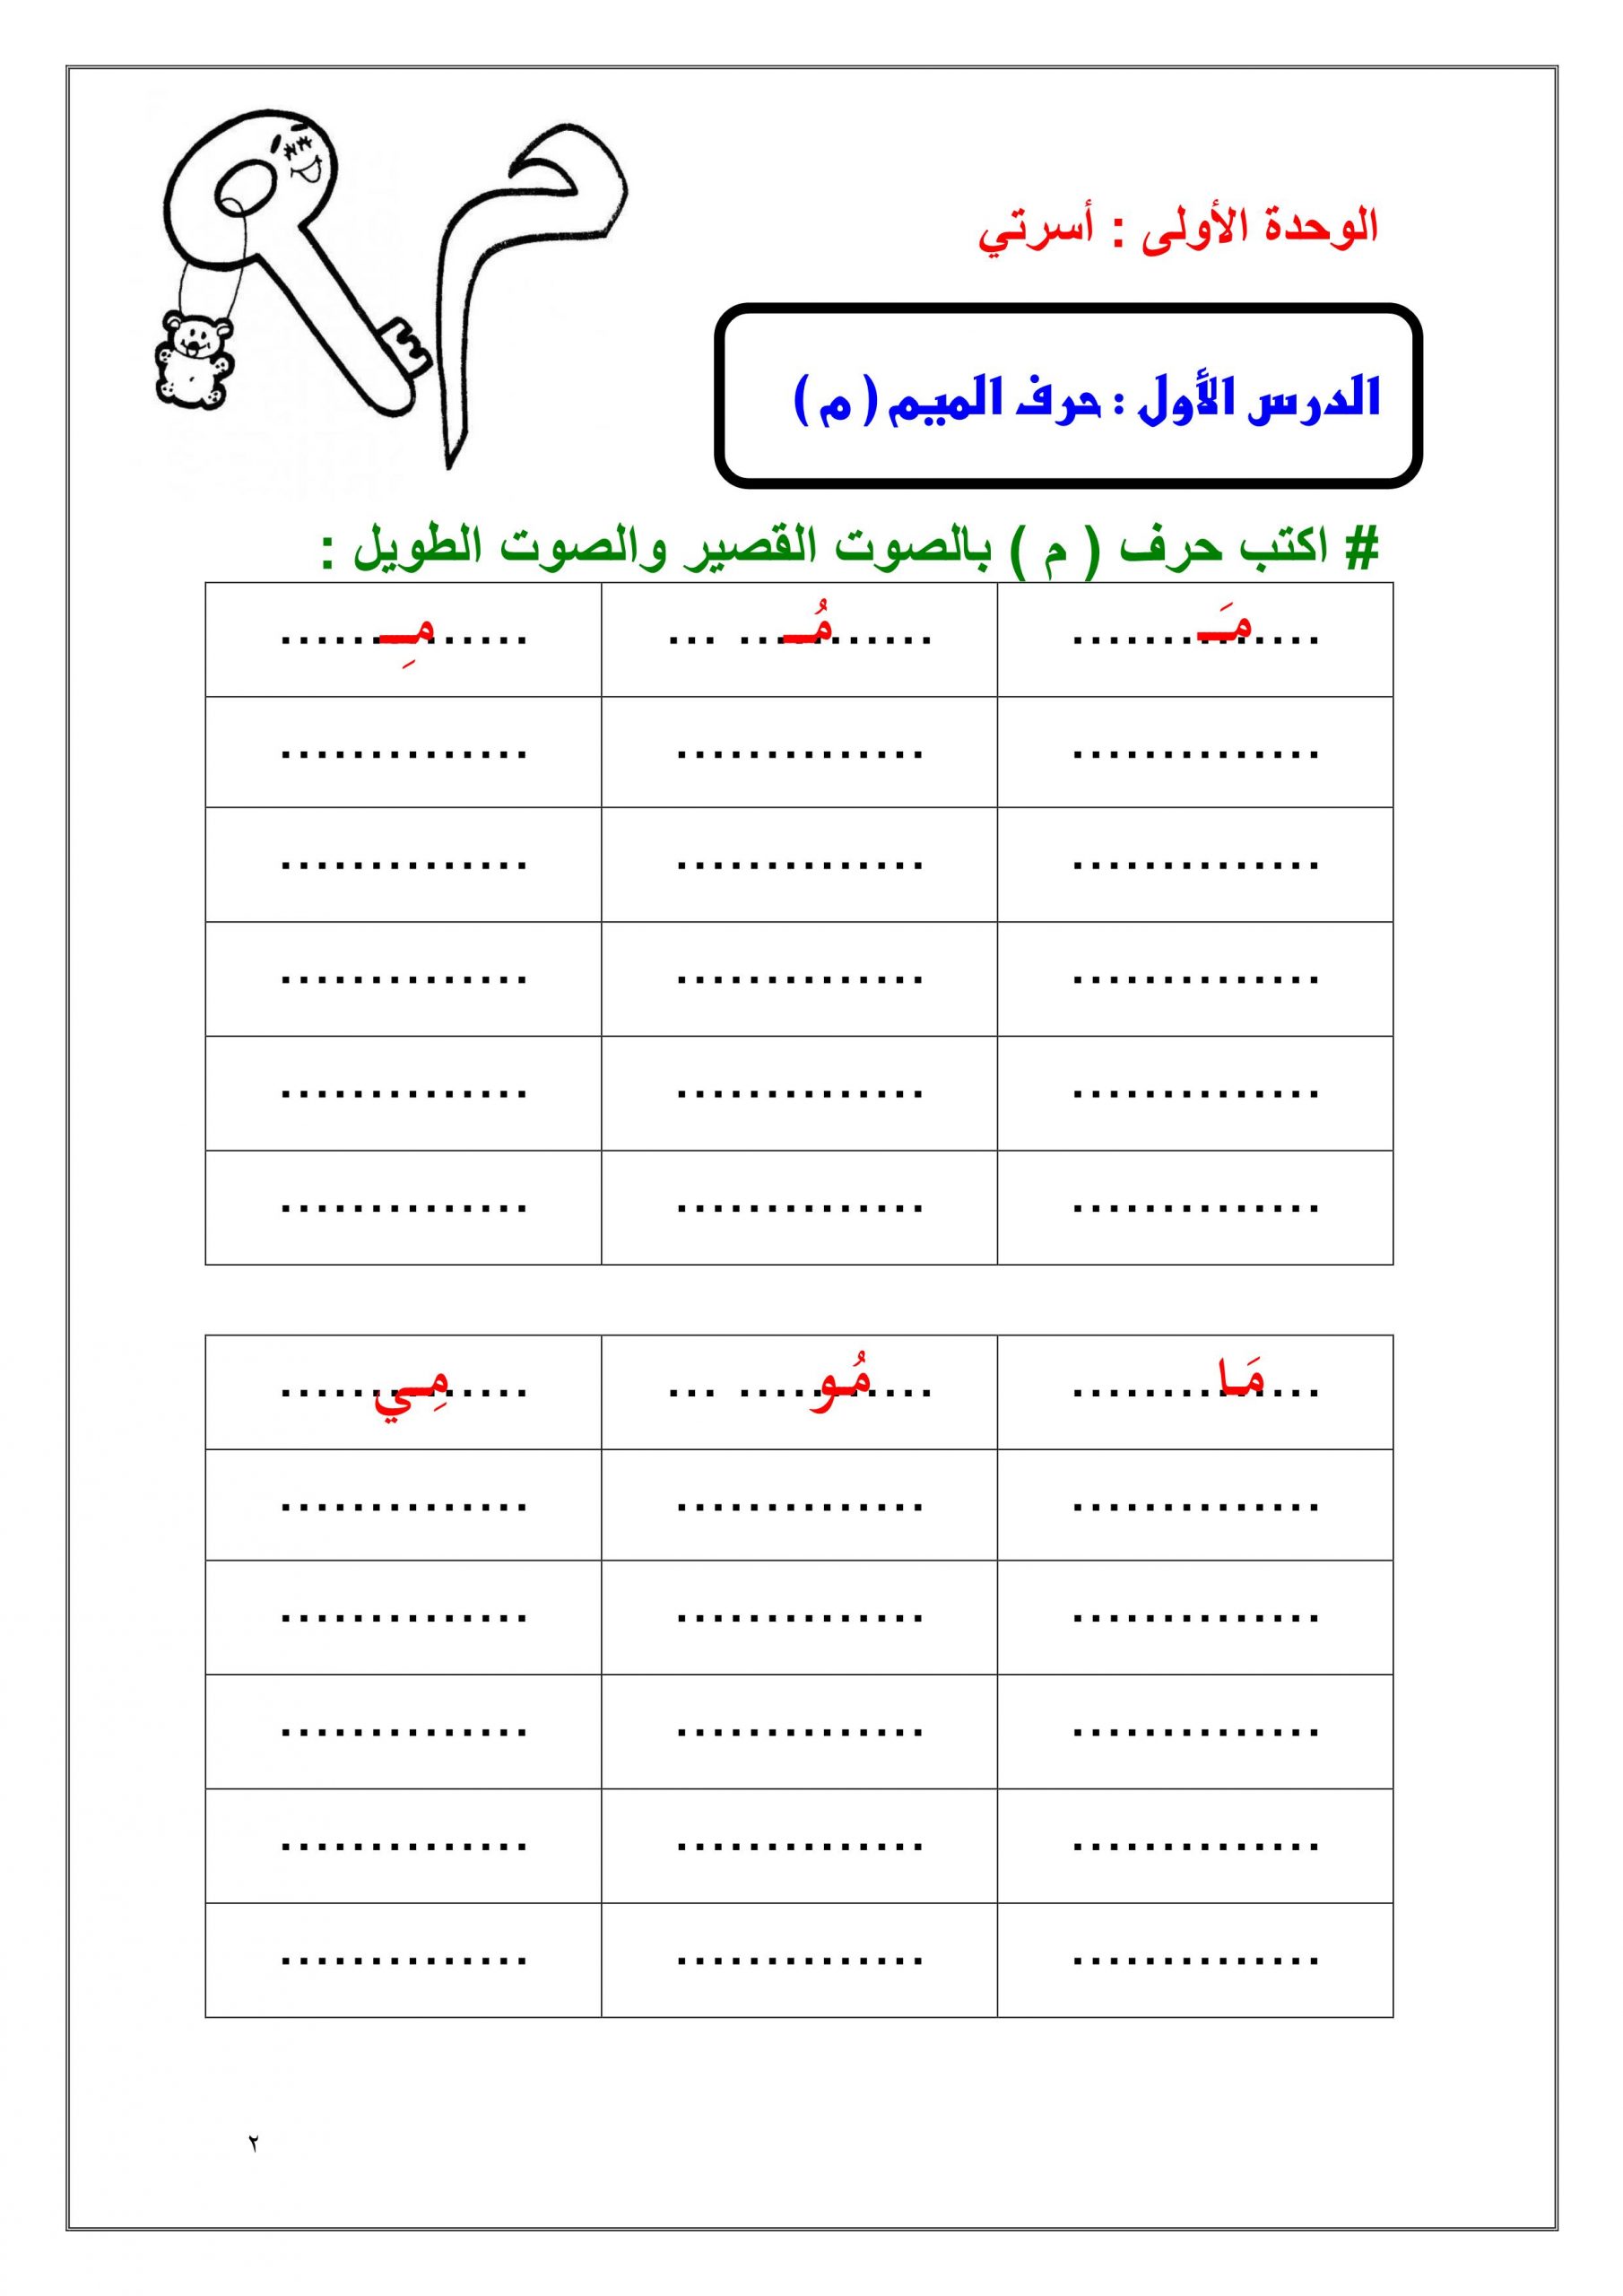 اوراق عمل متنوعة للحروف الهجائية للصف الاول مادة اللغة العربية